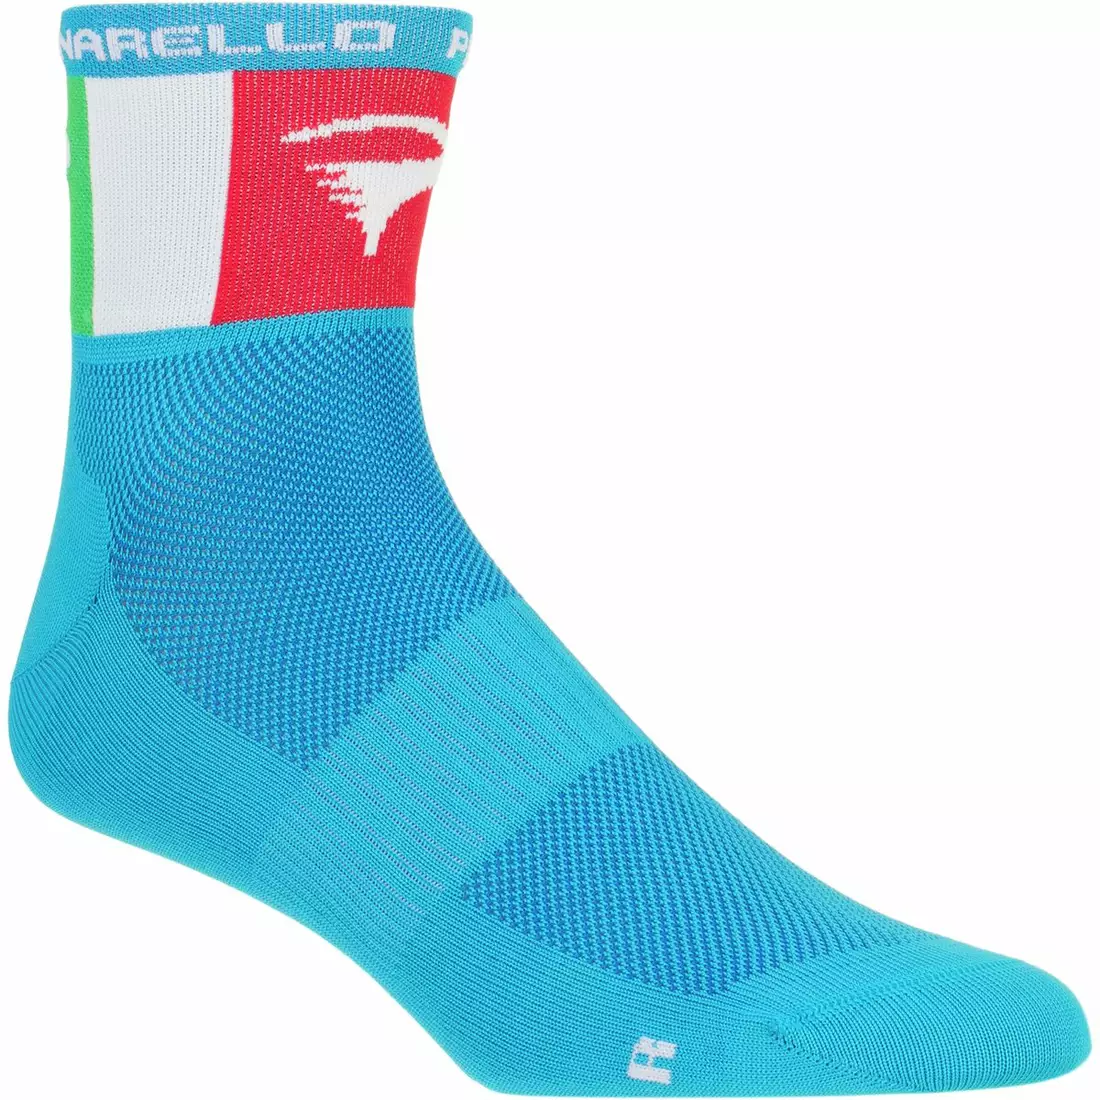 PINARELLO blue socks/Italia